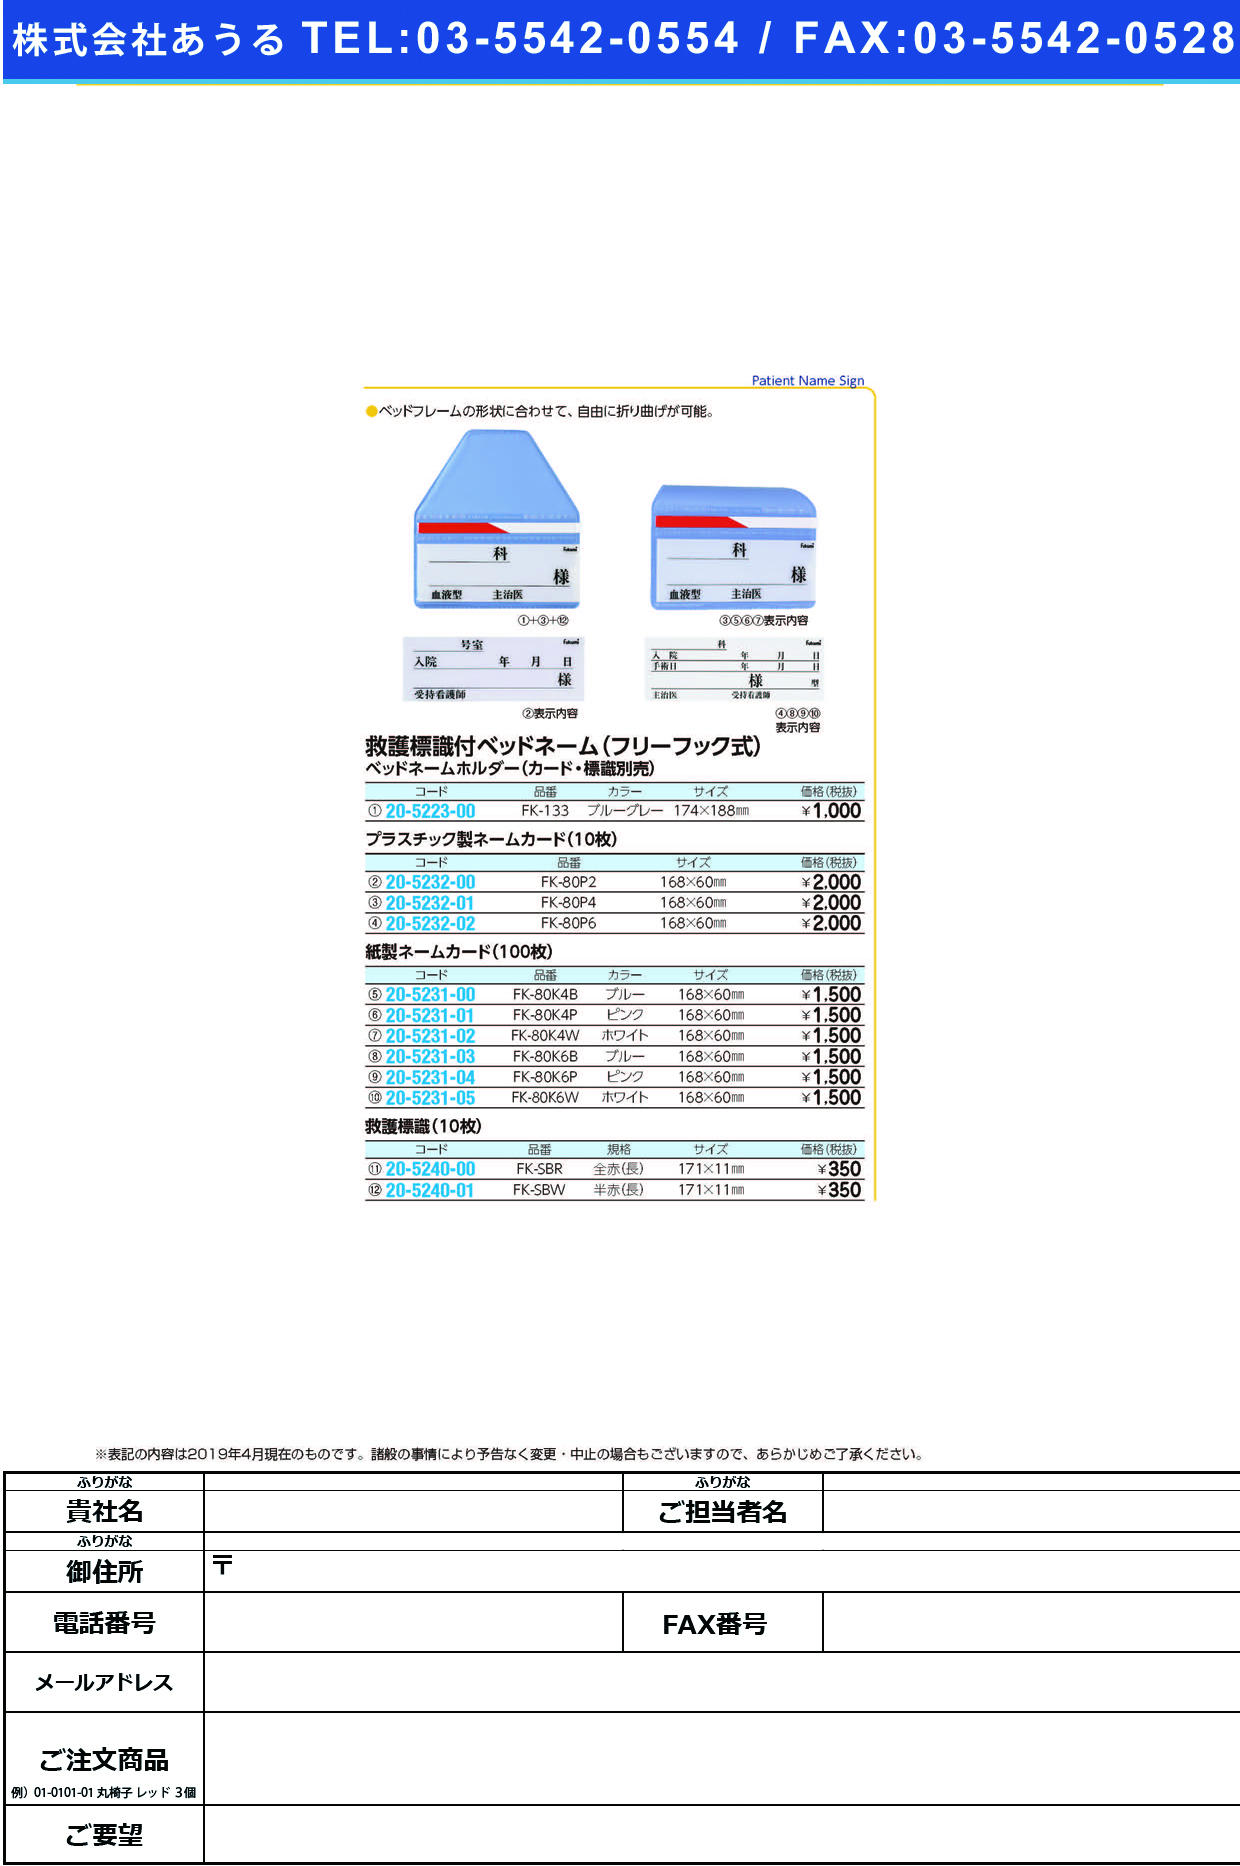 (20-5232-01)ネームカード（プラ） FK-80P4(10ﾏｲｲﾘ) ﾈｰﾑｶｰﾄﾞ【1束単位】【2019年カタログ商品】